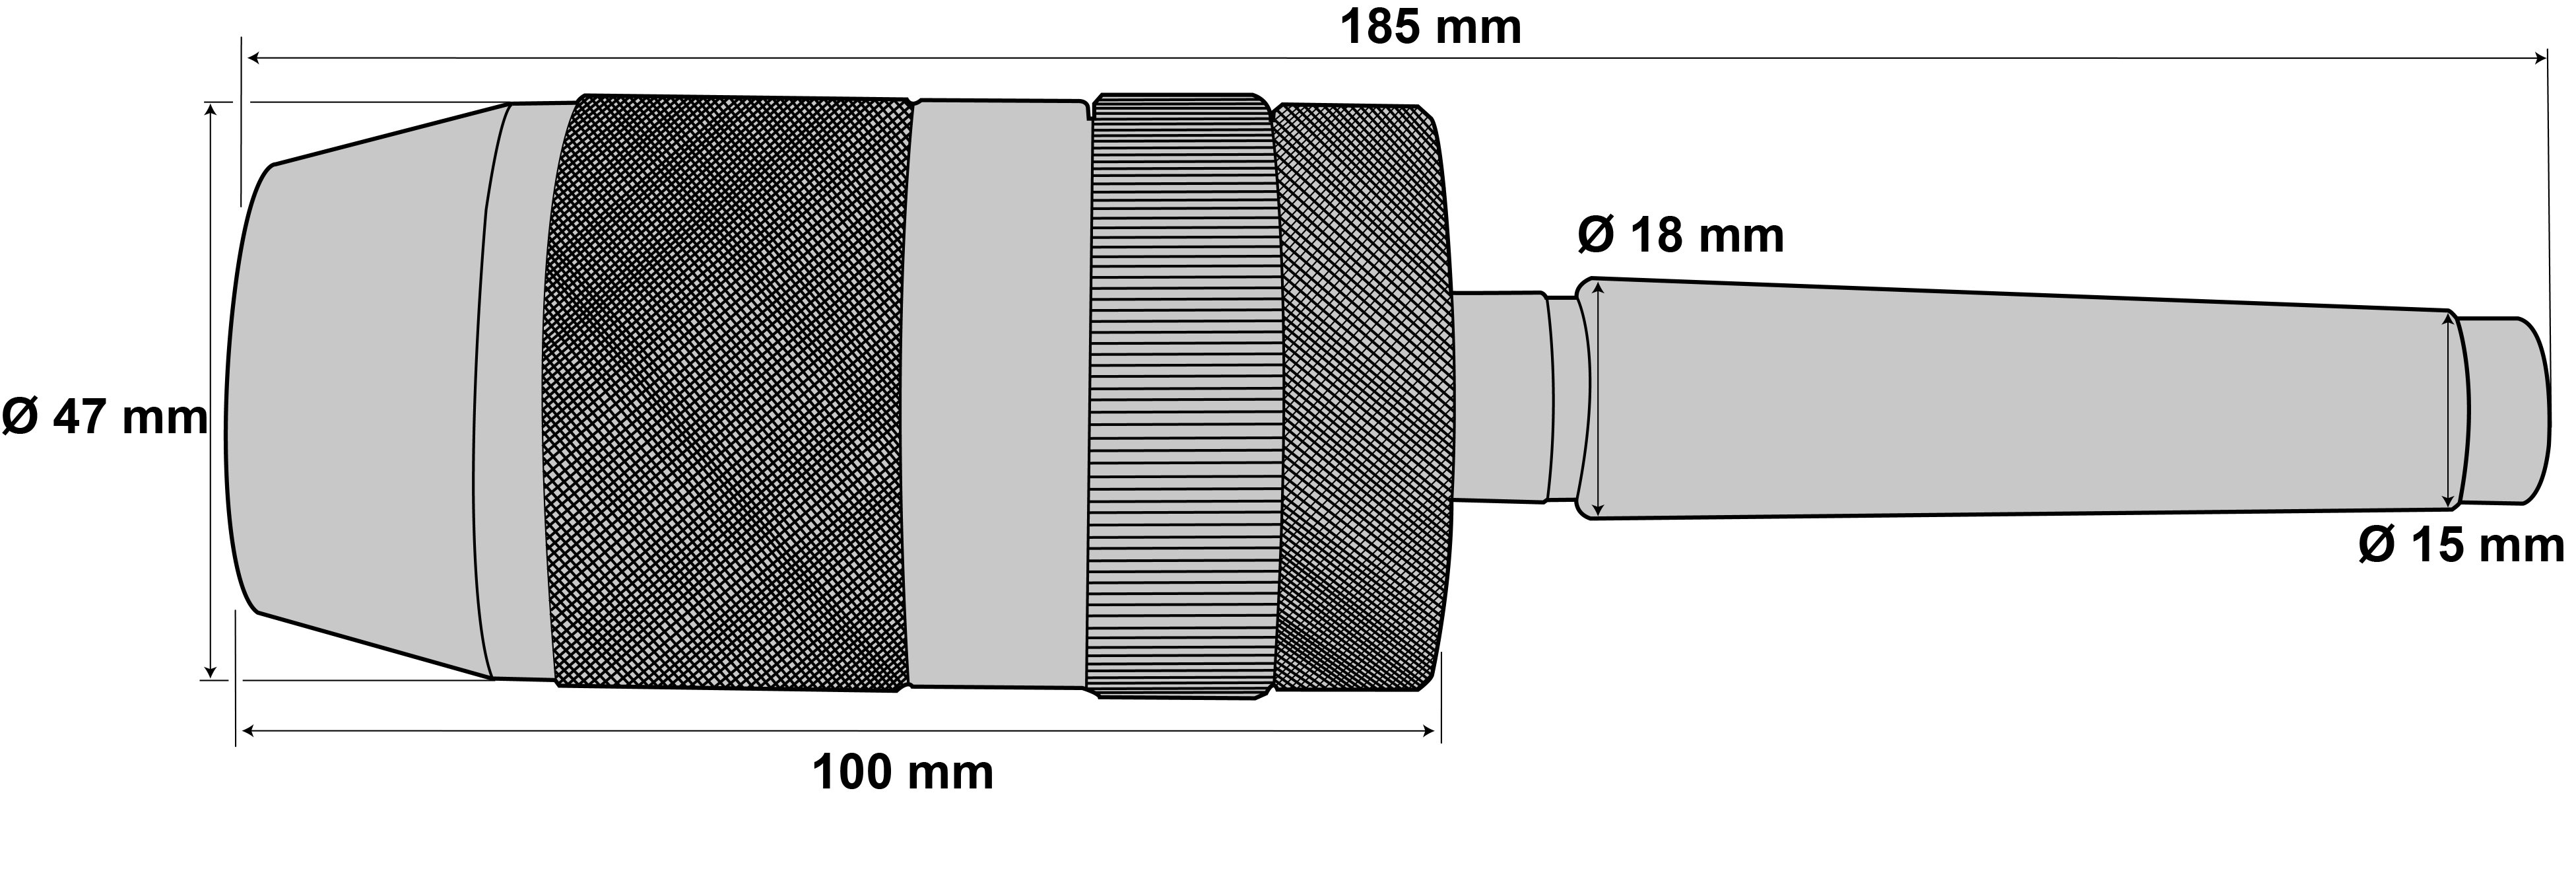 Schnellspann-Bohrfutter für Rechts- und Linkslauf 1 - 16 mm MK2 / M10